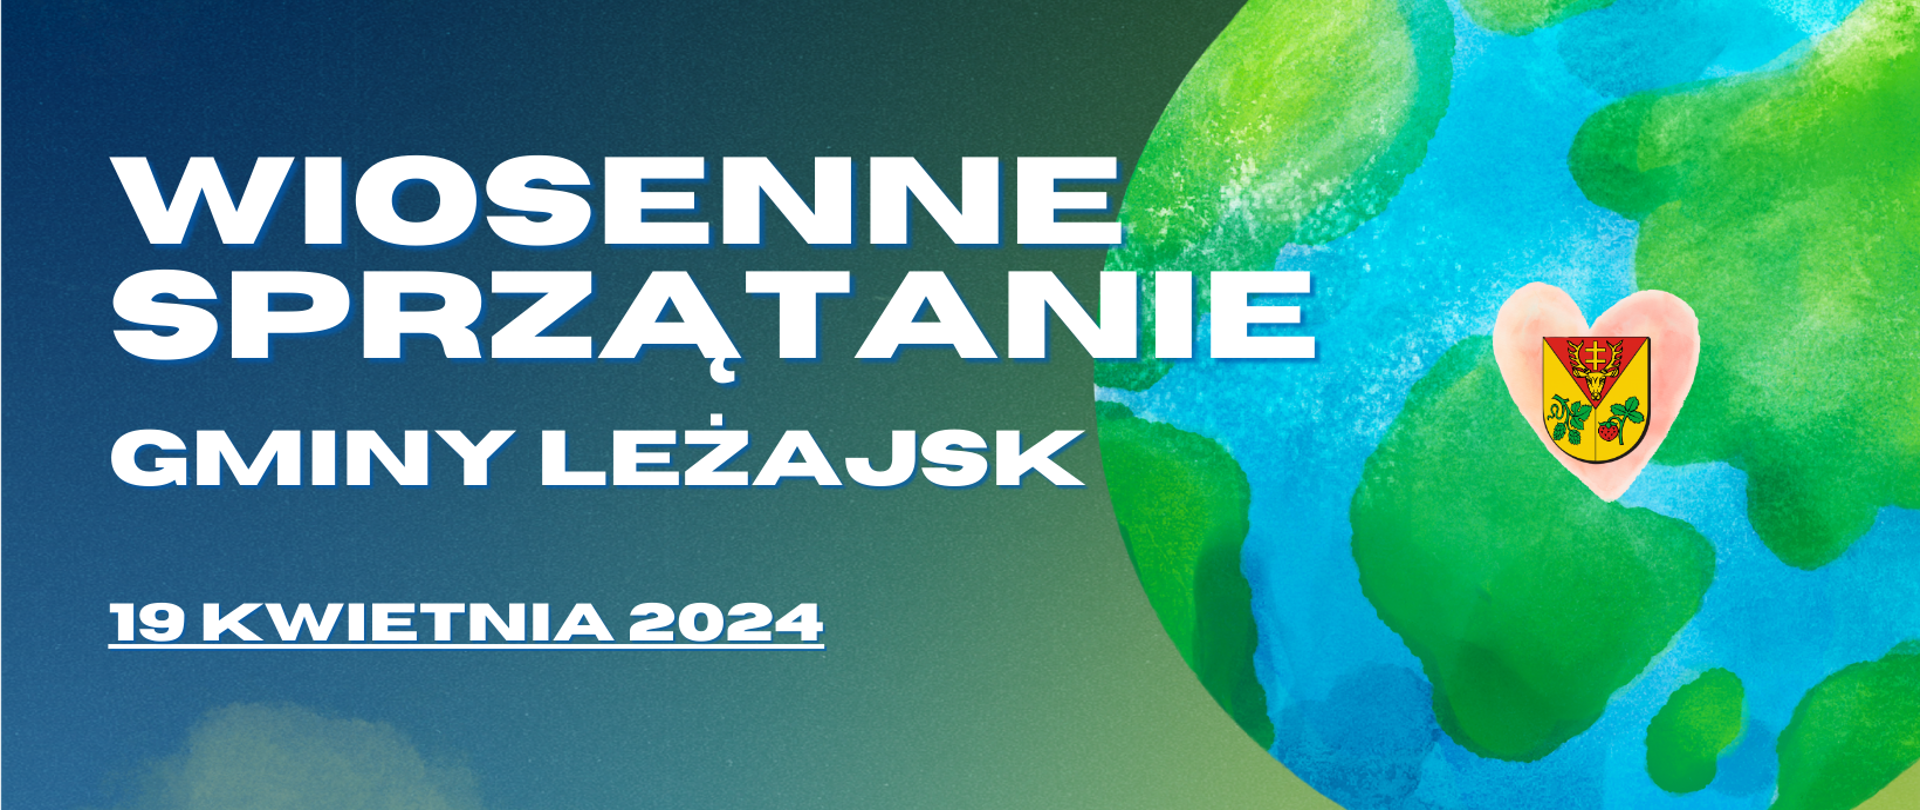 Na niebieskim tle, po lewej stronie znajduje się napis "wiosenne sprzątanie Gminy Leżajsk 19 kwietnia 2024. Po prawej stronie znajduje się grafika planety ziemi,